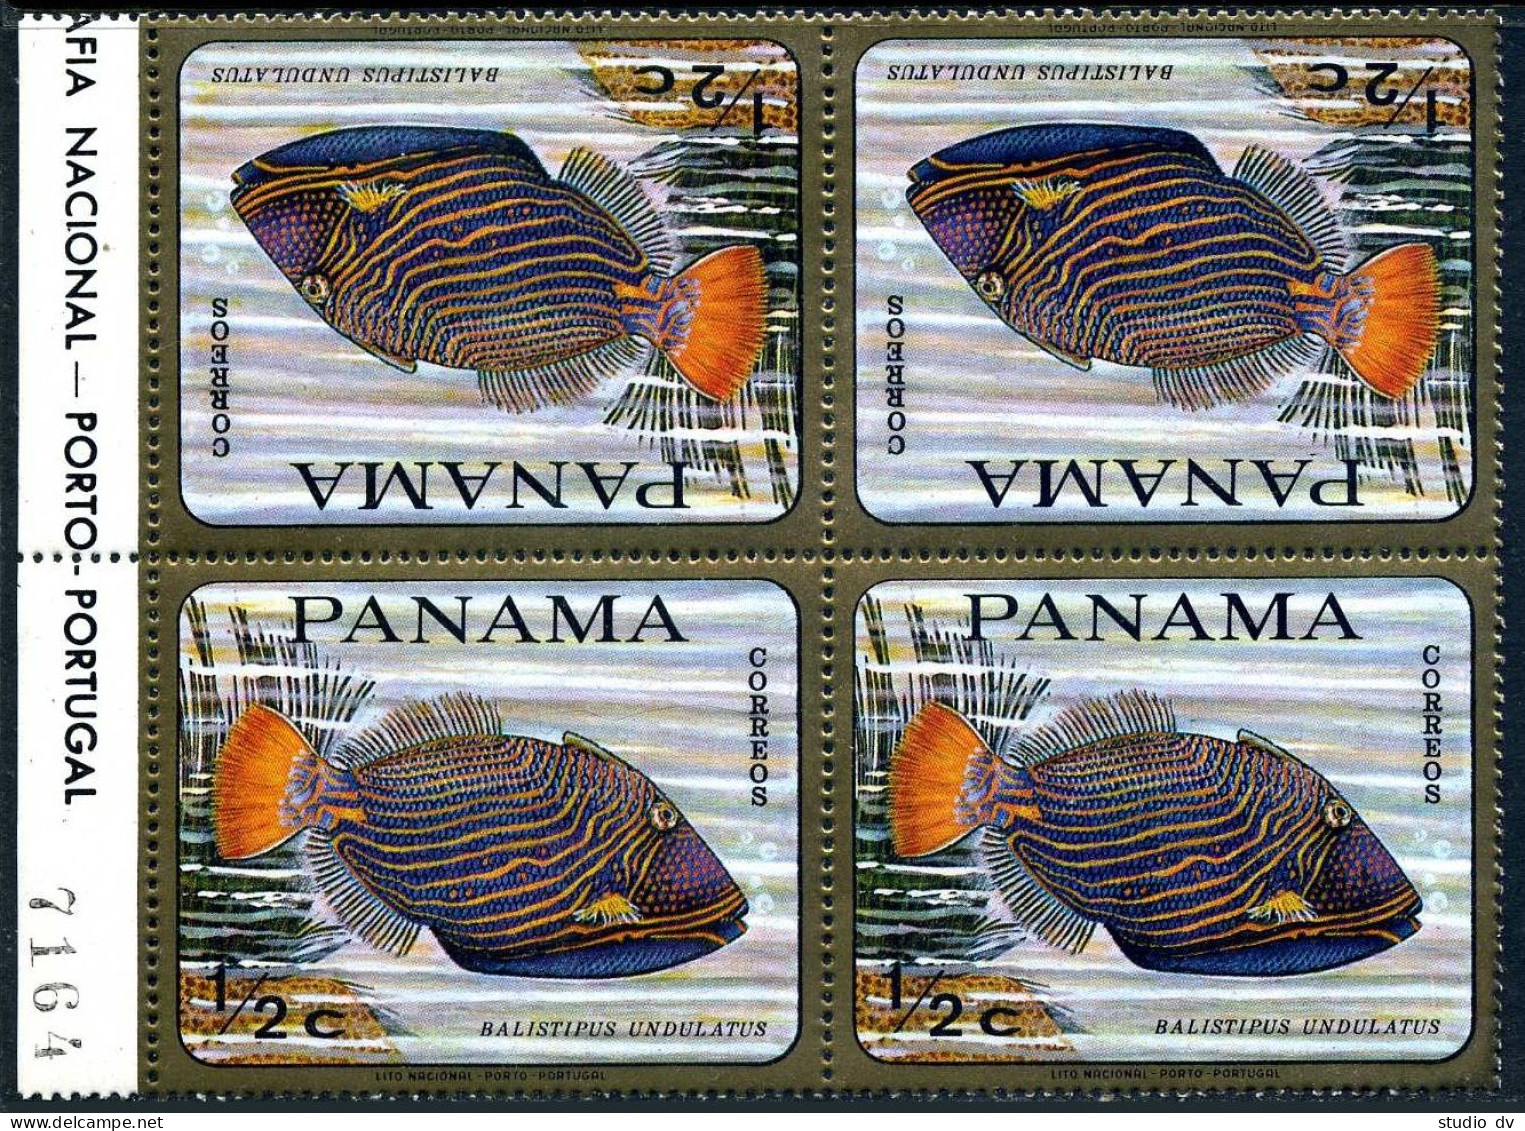 Panama 486 Tete-beche Block,MNH.Mi 1070.Tropical Fish,1968.Balistripus Undulatus - Panama